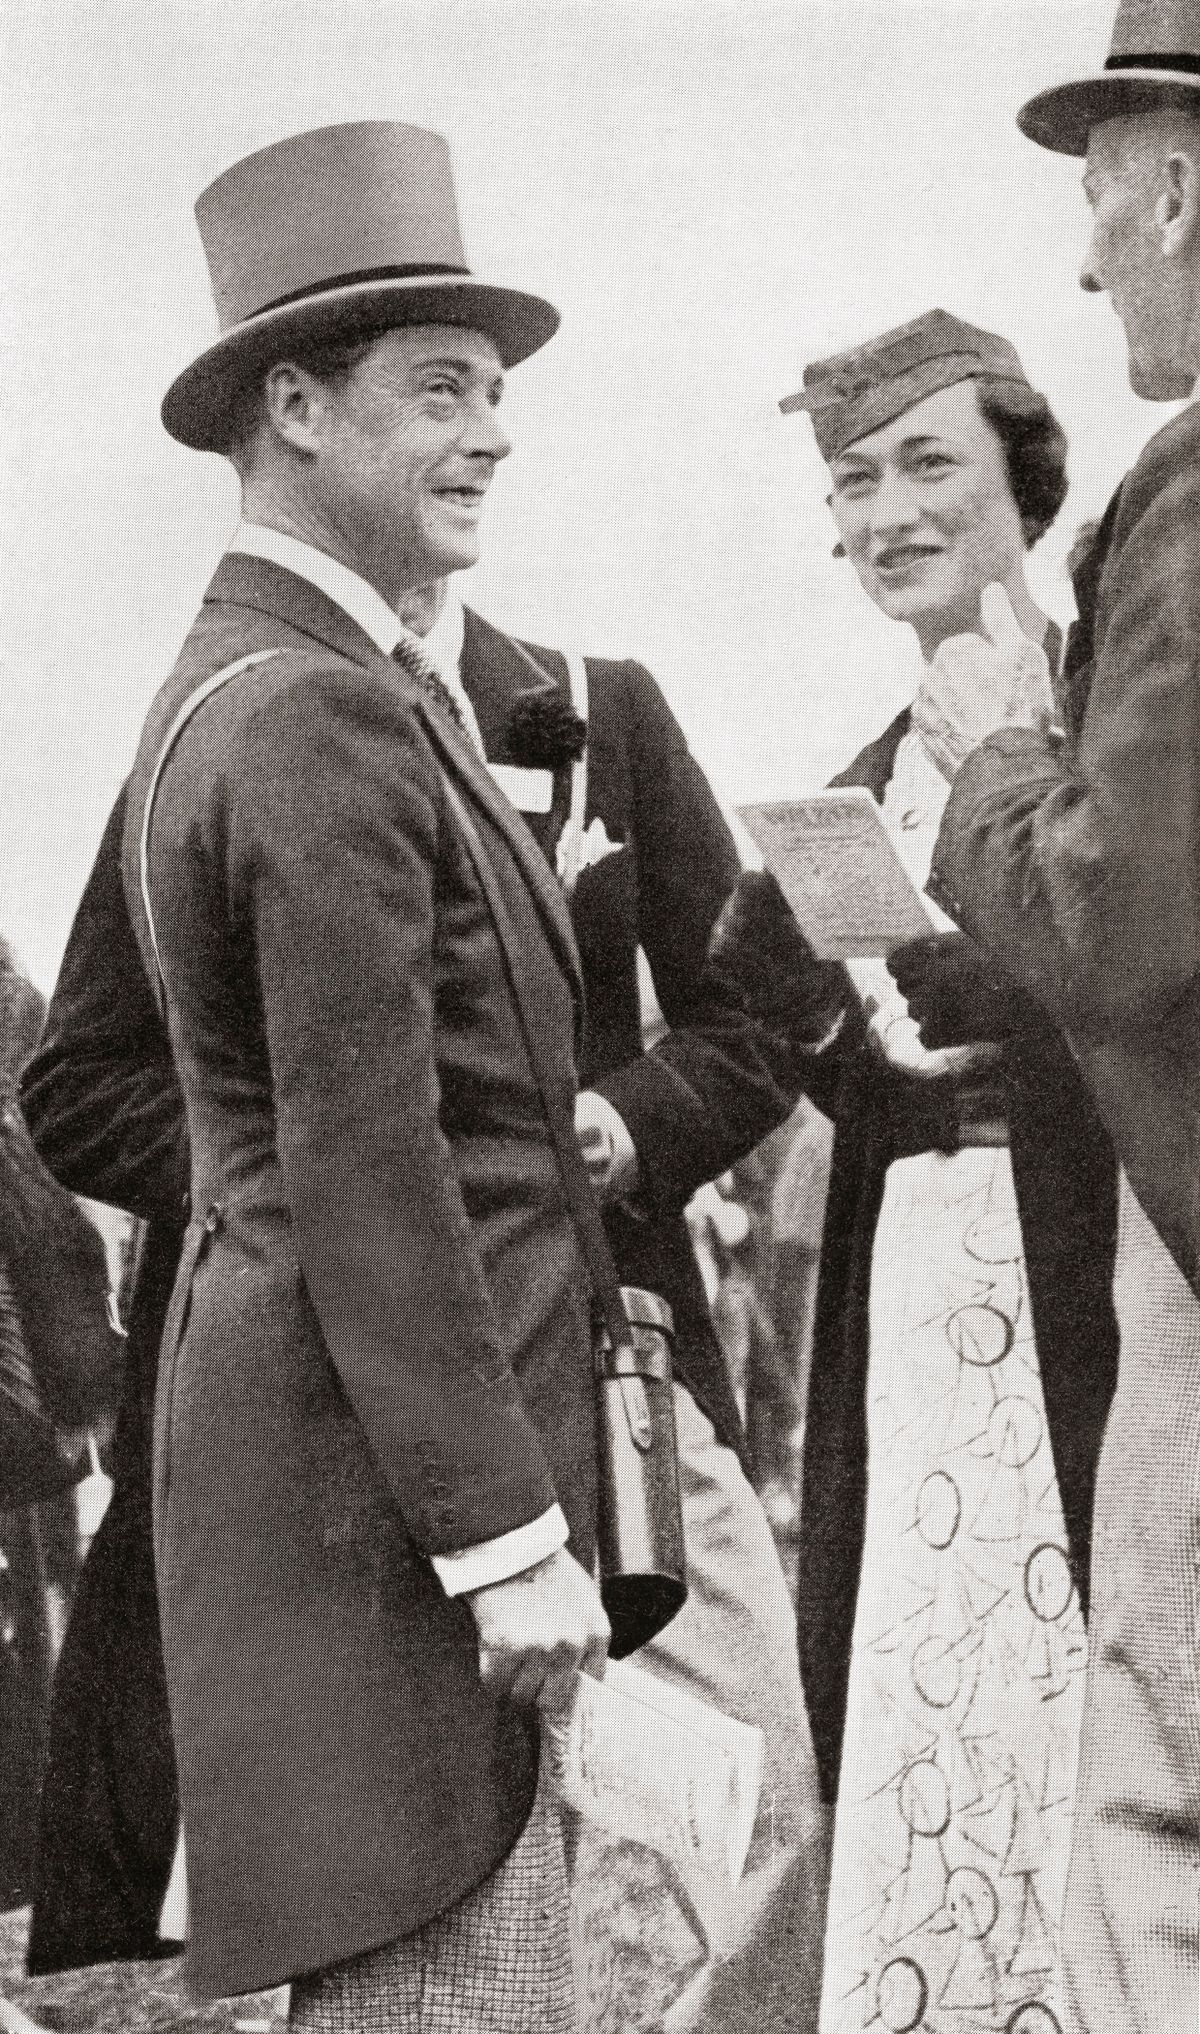 The Prince Of Wales
A walesi herceg, később Edward Viii király, Ascot Races-en Wallis Simpsonnal 1935-ben